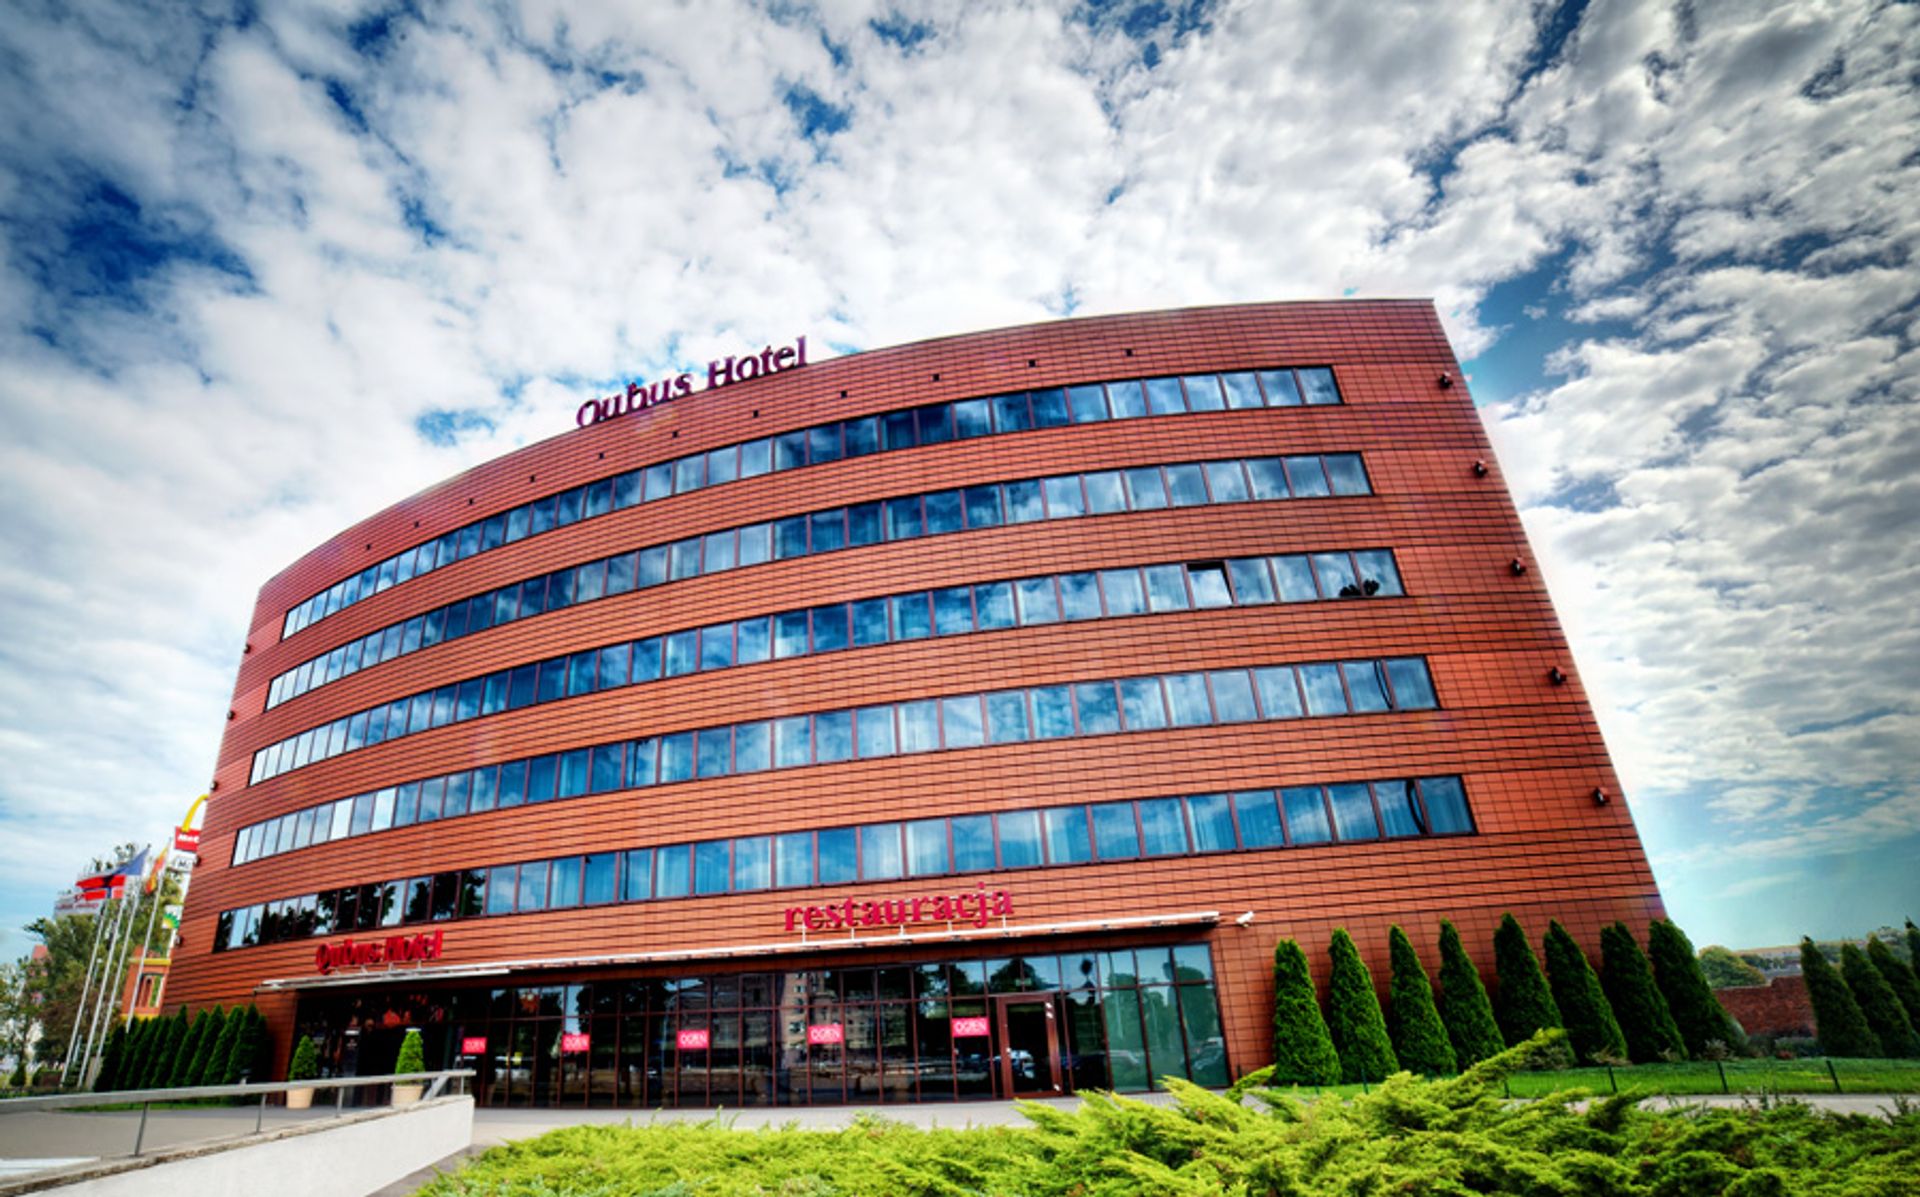  Jeden z najbardziej znanych hoteli w Łodzi obchodzi swoje 10-lecie